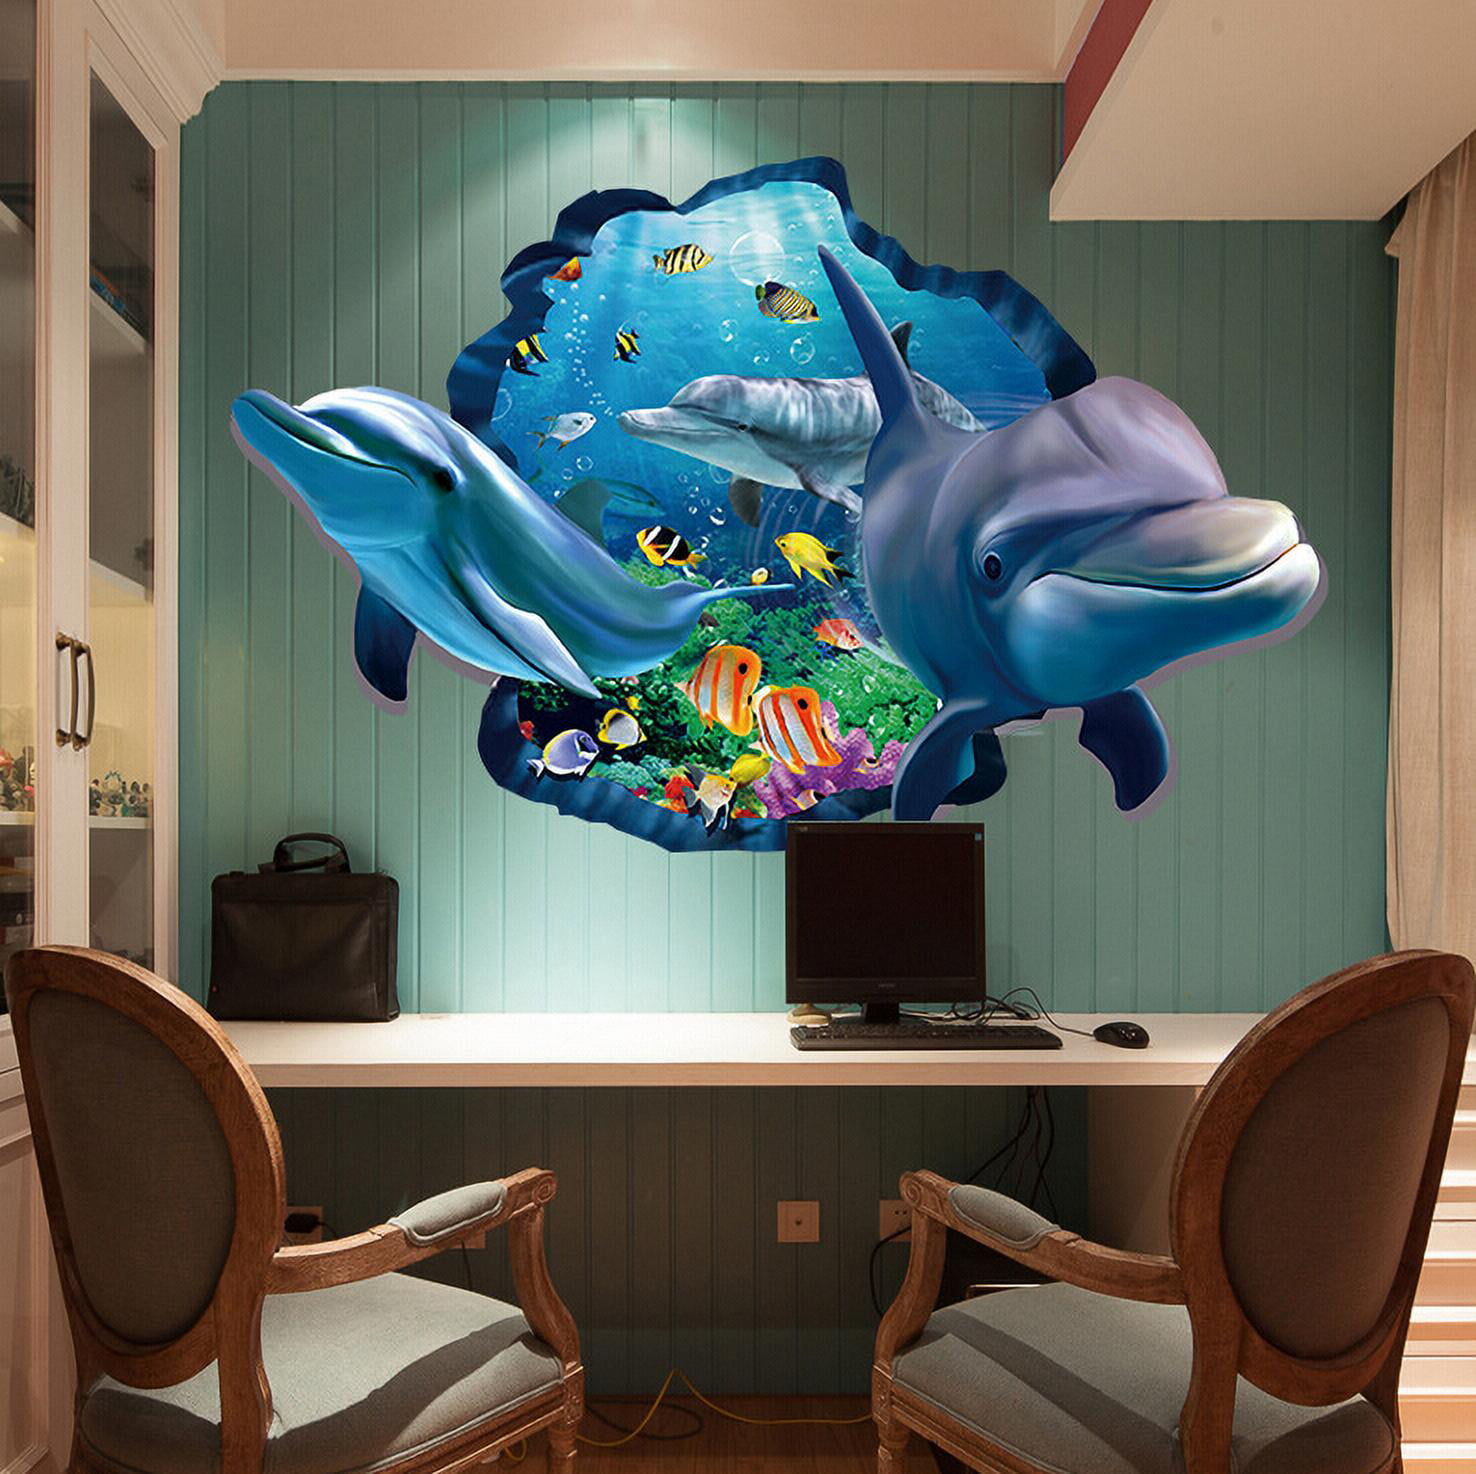 Dolphin Sunset 3D Wall Art Sticker Mural Decal Poster Print Kids Room Decor FP20 